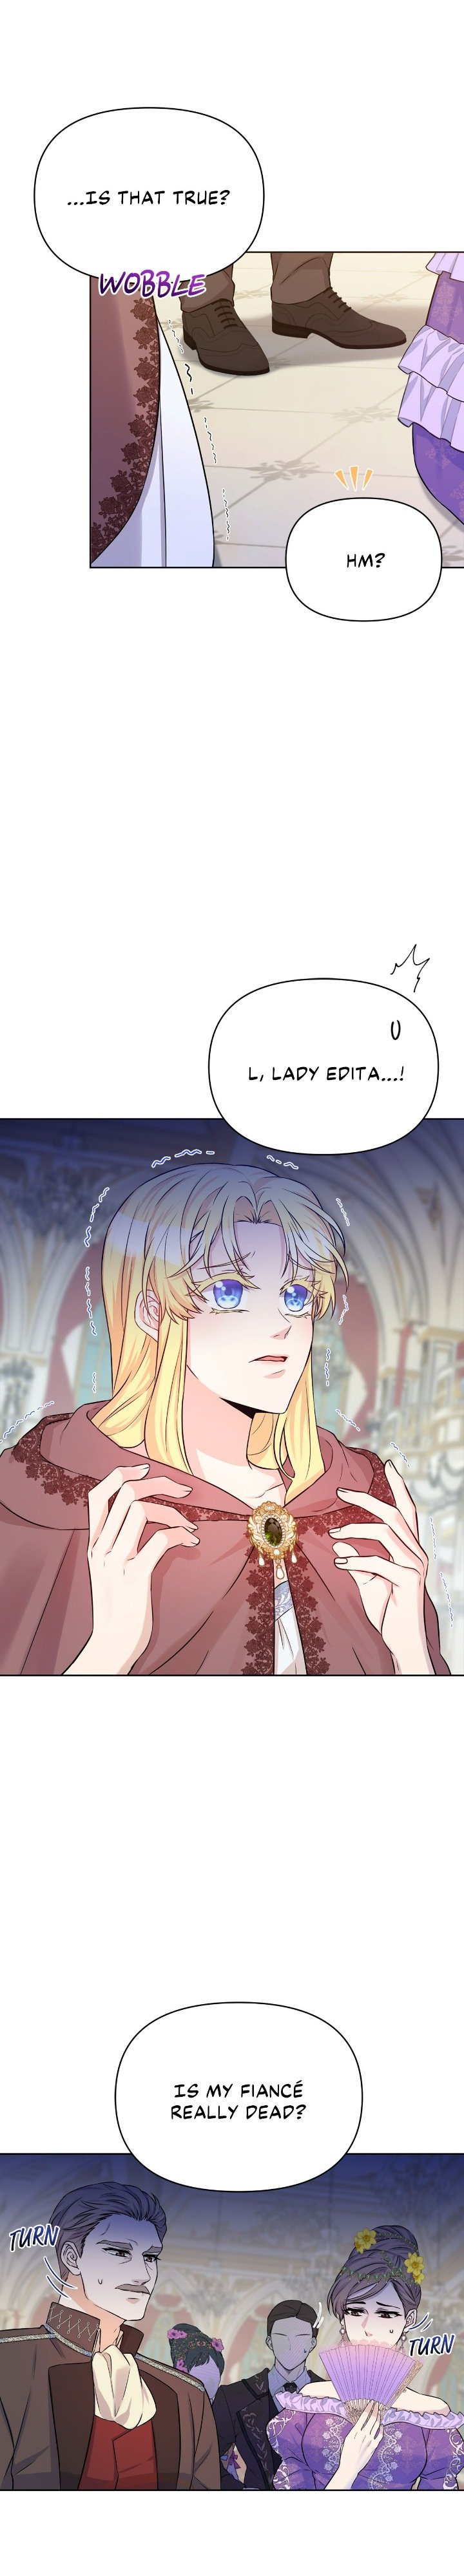 Lady Edita chapter 3